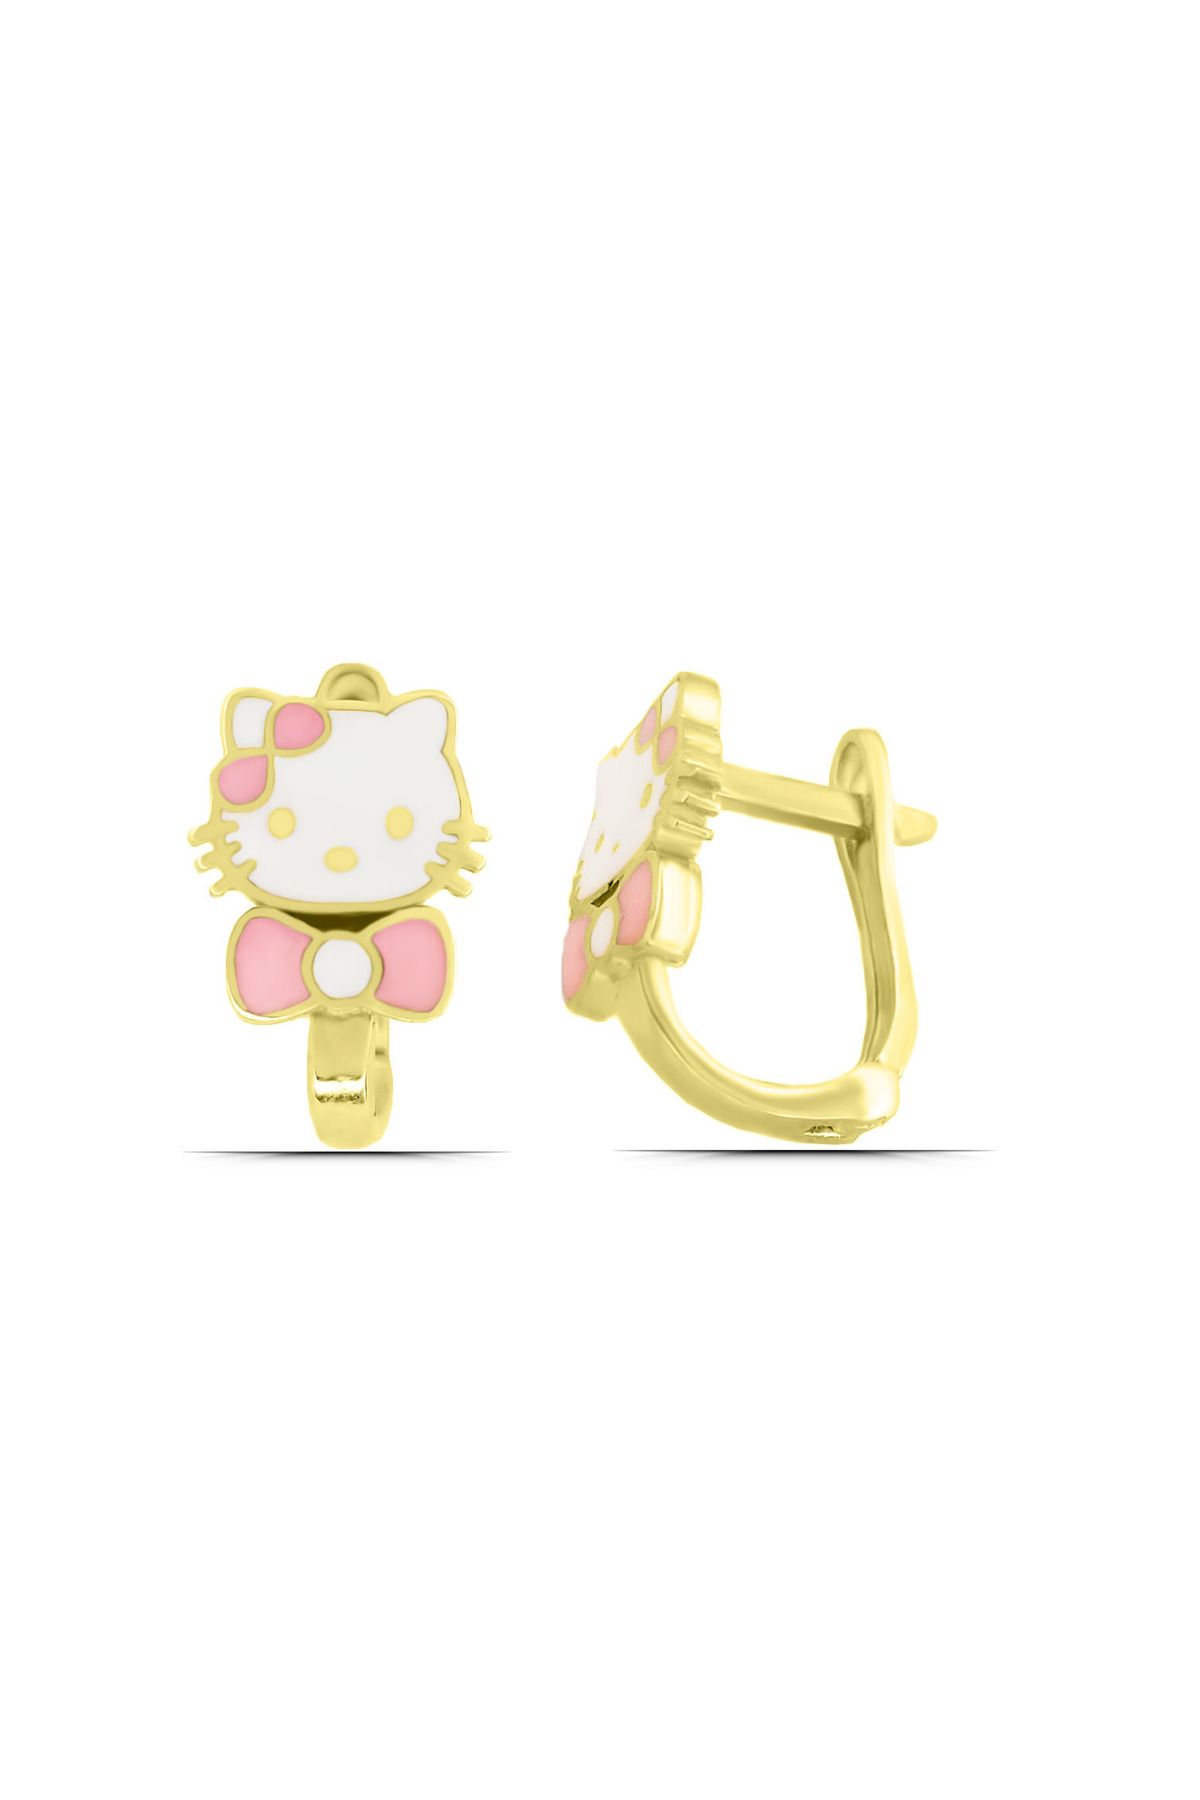 Parmas Design Kız Çocuk Hello Kitty Kedi Tasarım 925 Ayar Gümüş J Küpe